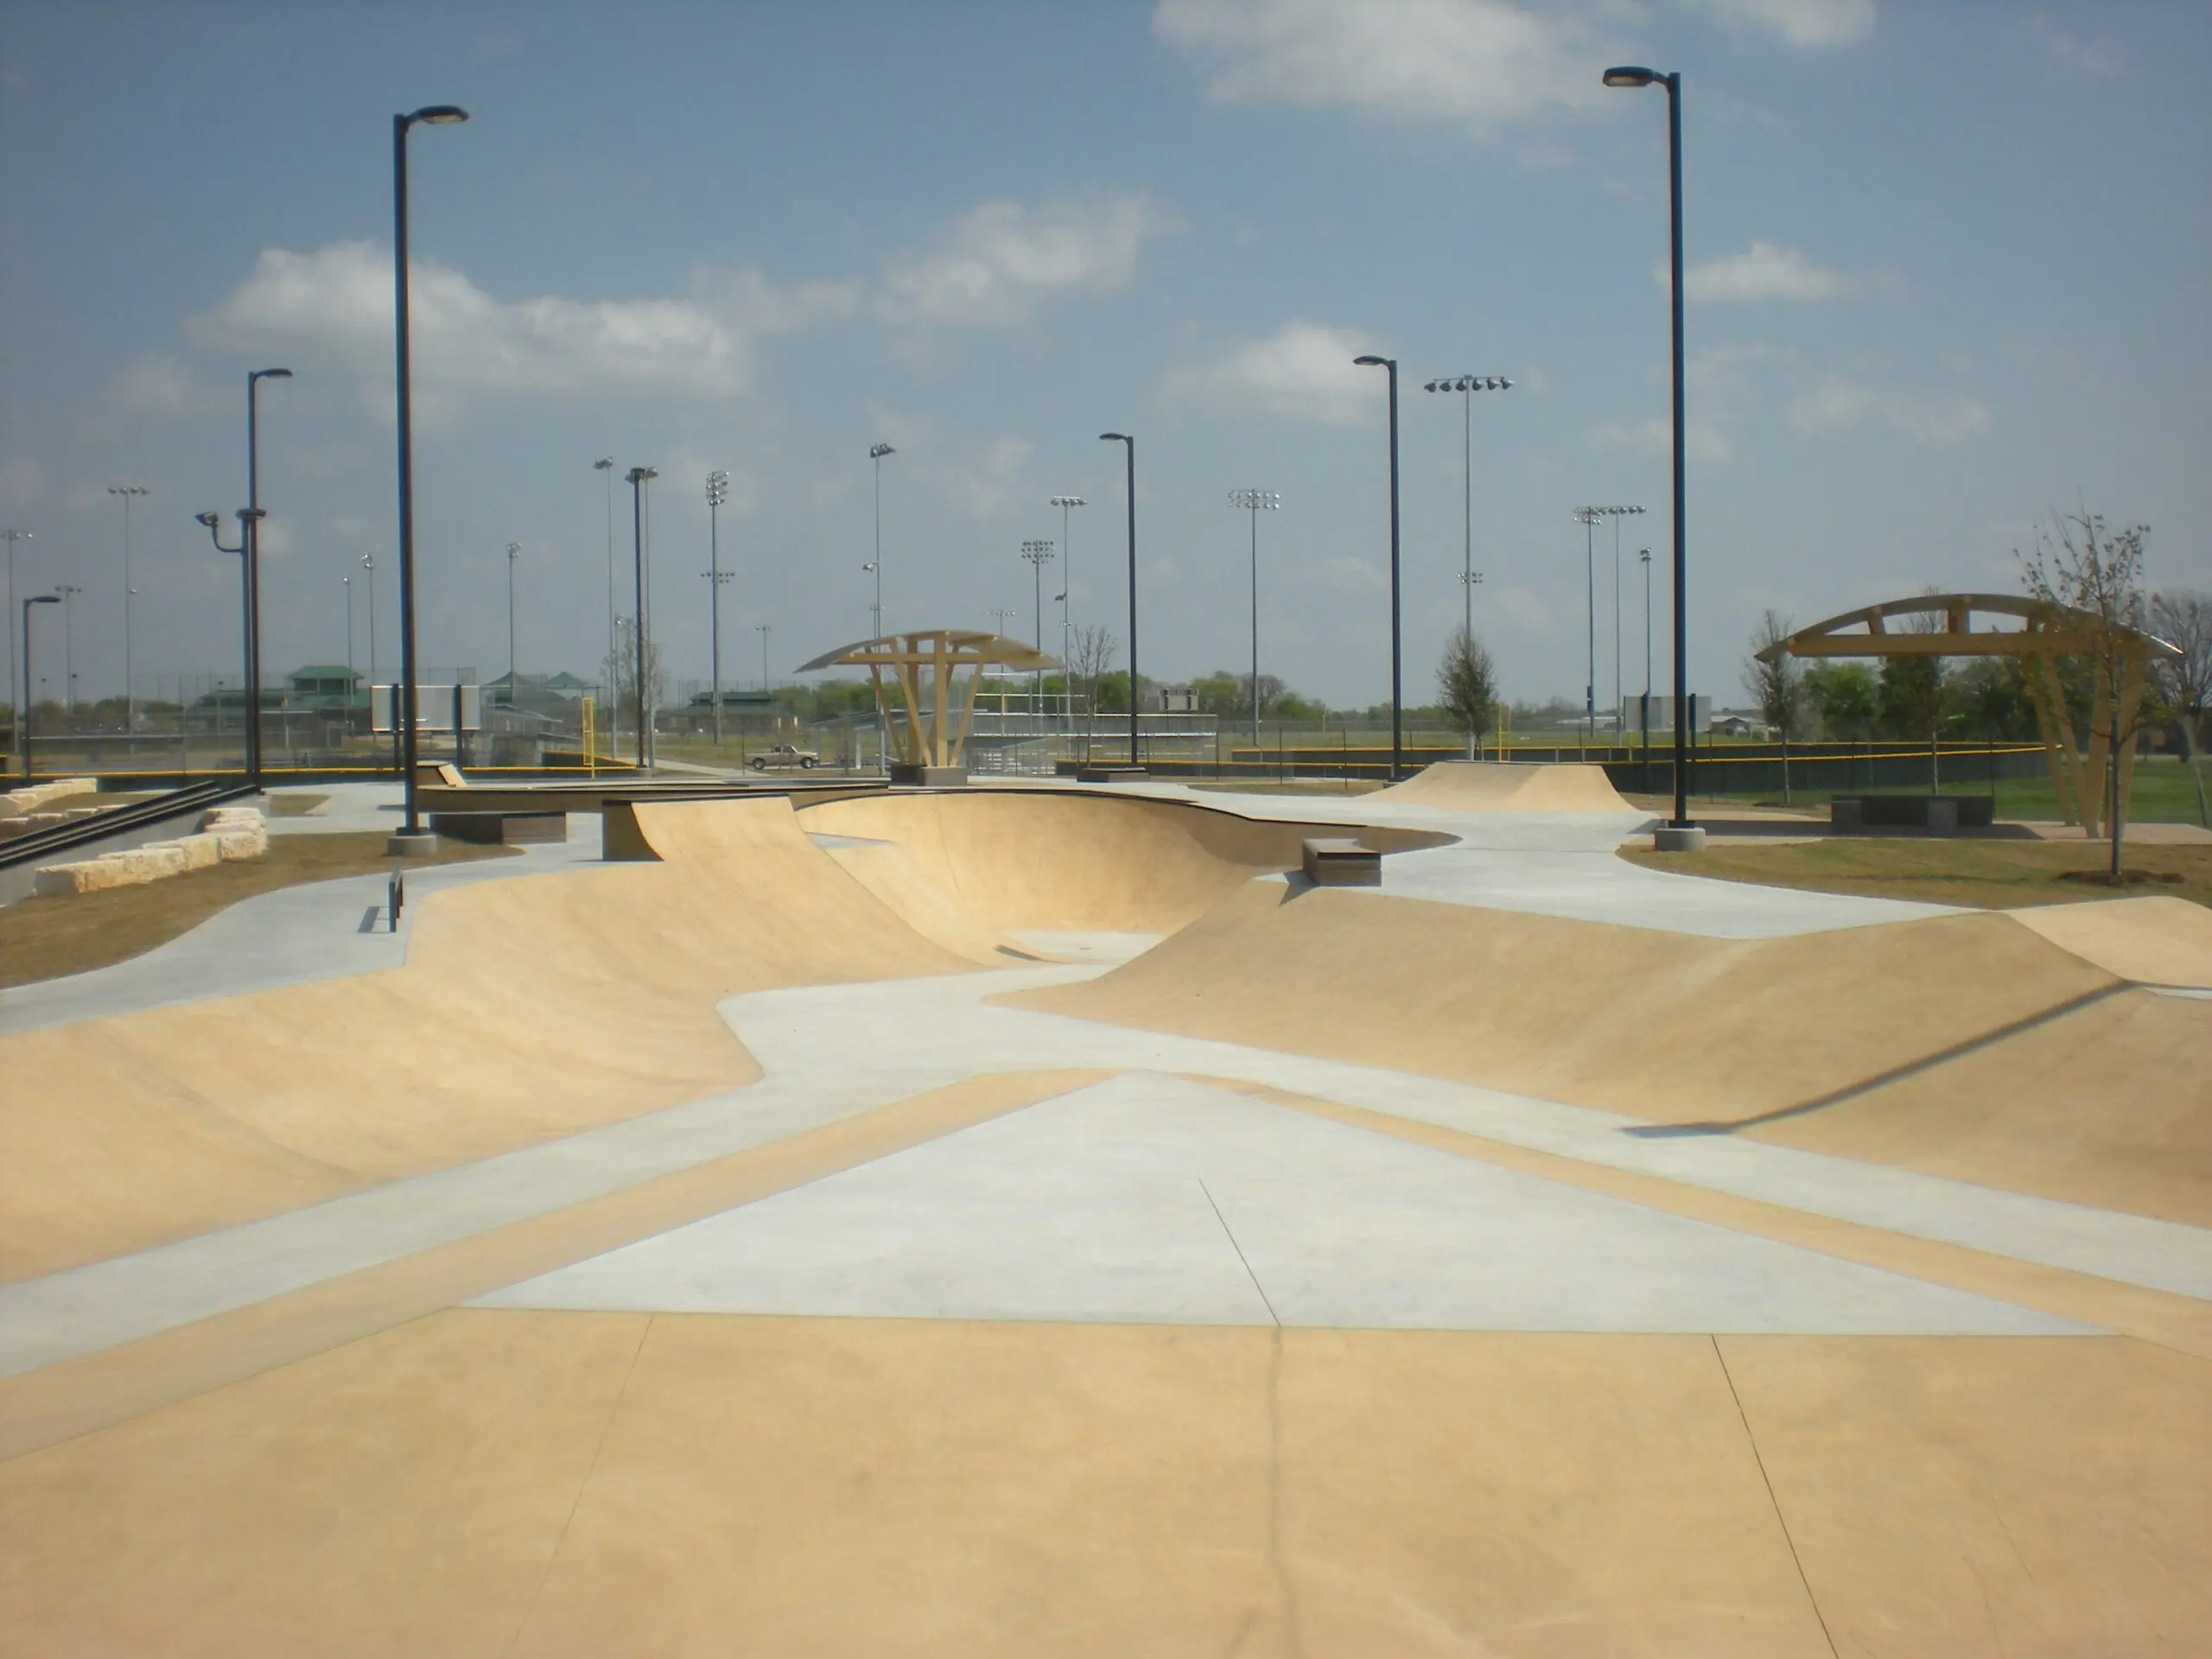 McKinney Texas Gabe Nesbitt Skate Park